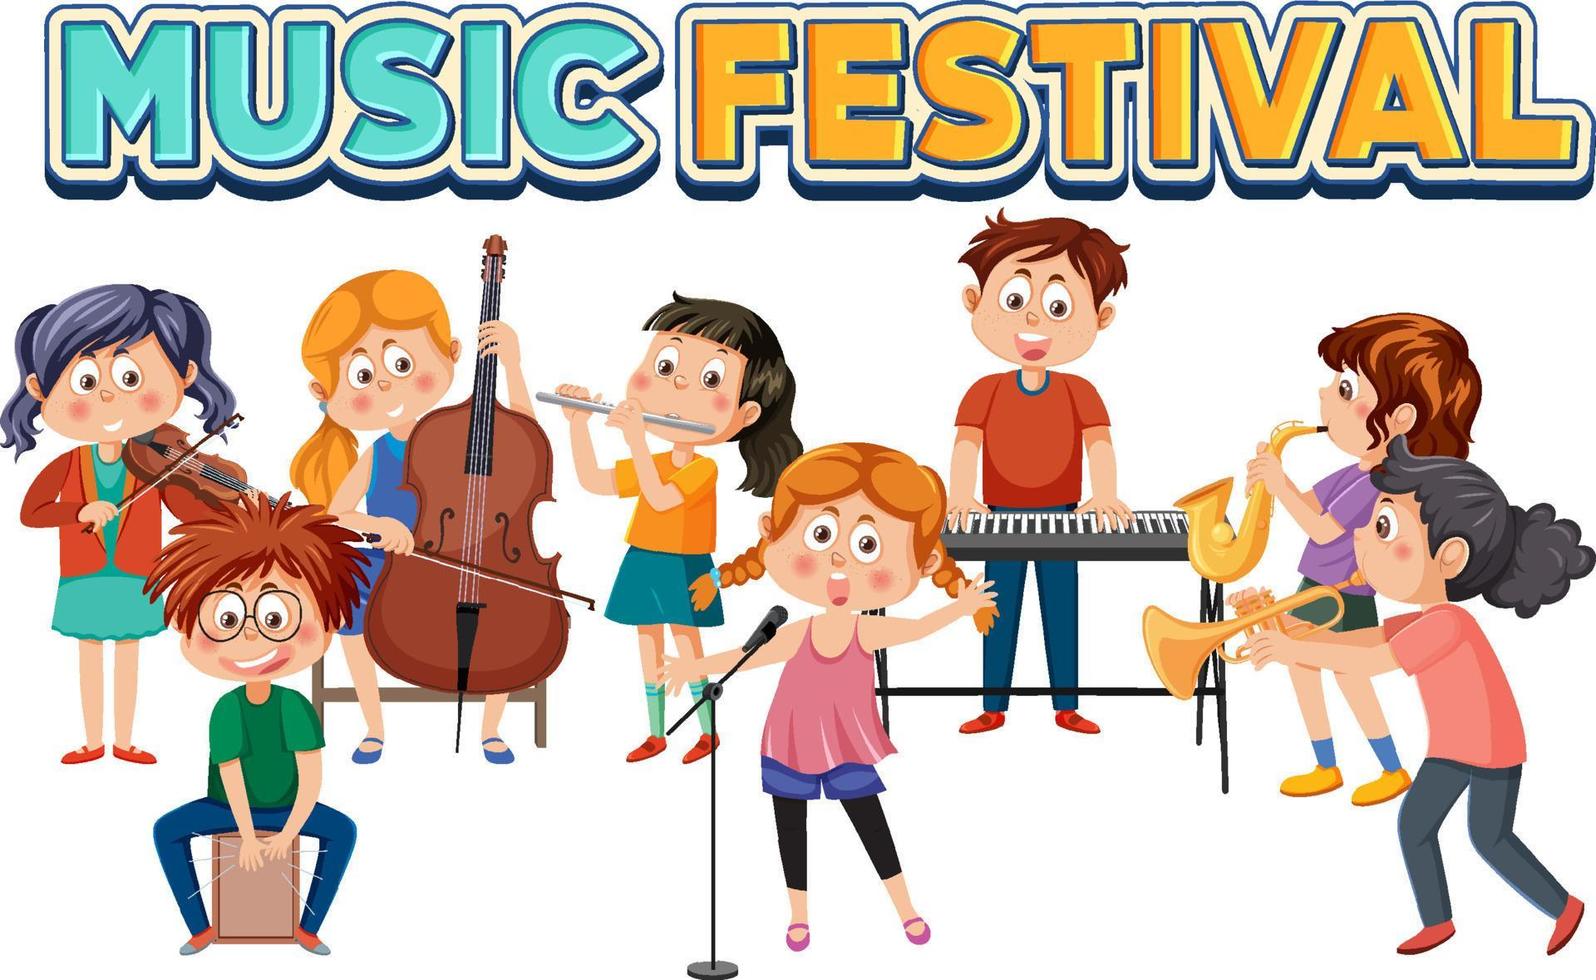 muziek- festival tekst met kinderen spelen musical instrument vector